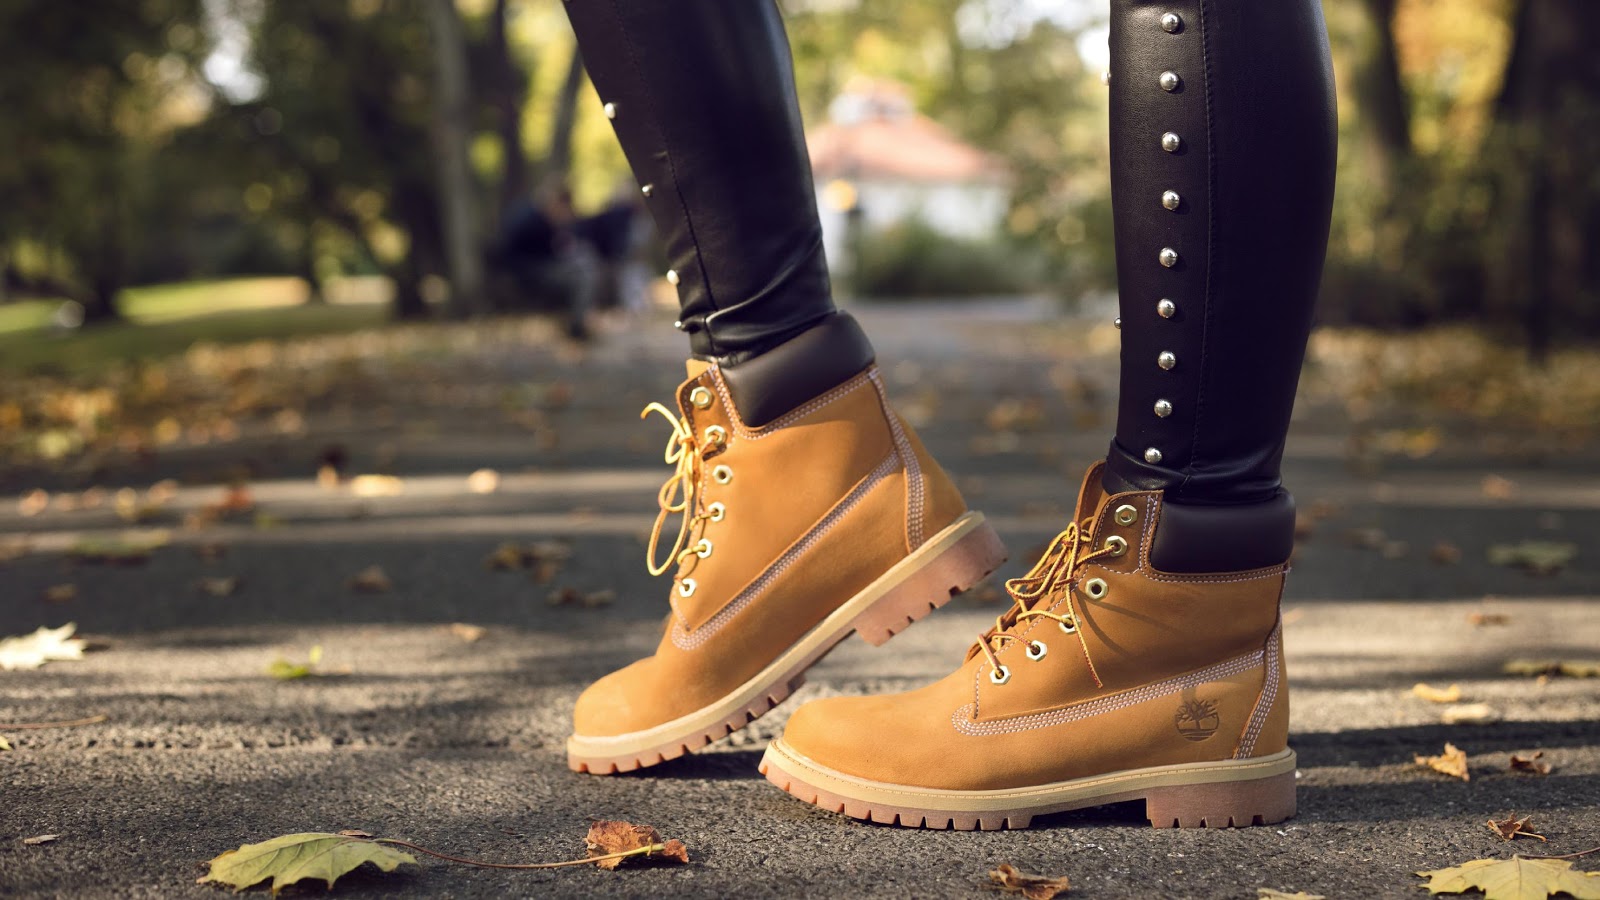 A bordo puente cangrejo Cómo limpiar las botas Timberland para mantener la más alta calidad? | Blog  zapatos.es